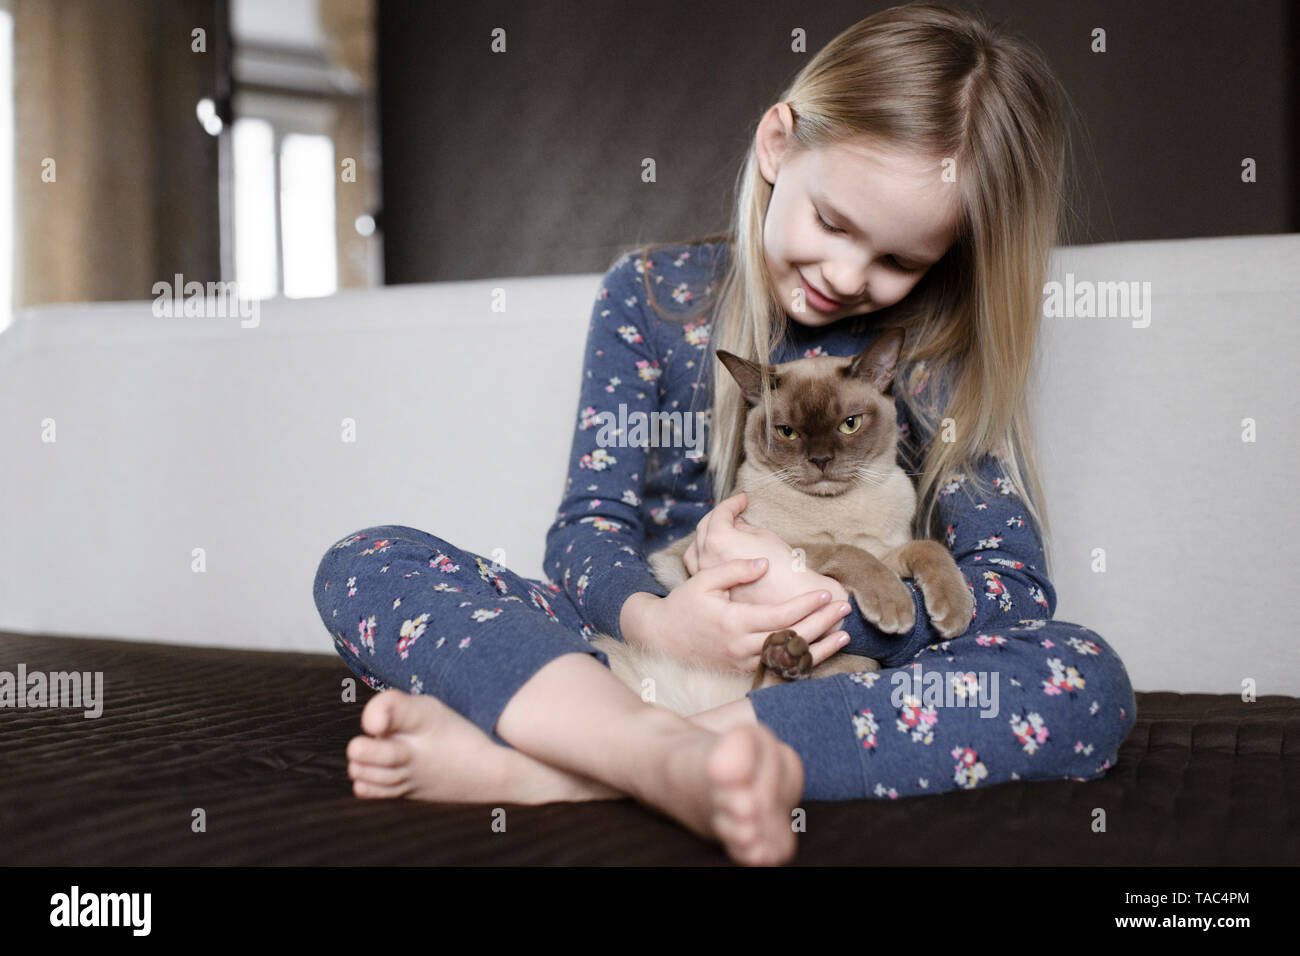 Lächelnde Mädchen tragen Pyjama mit floralem Design zu Hause Holding cat Stockfoto